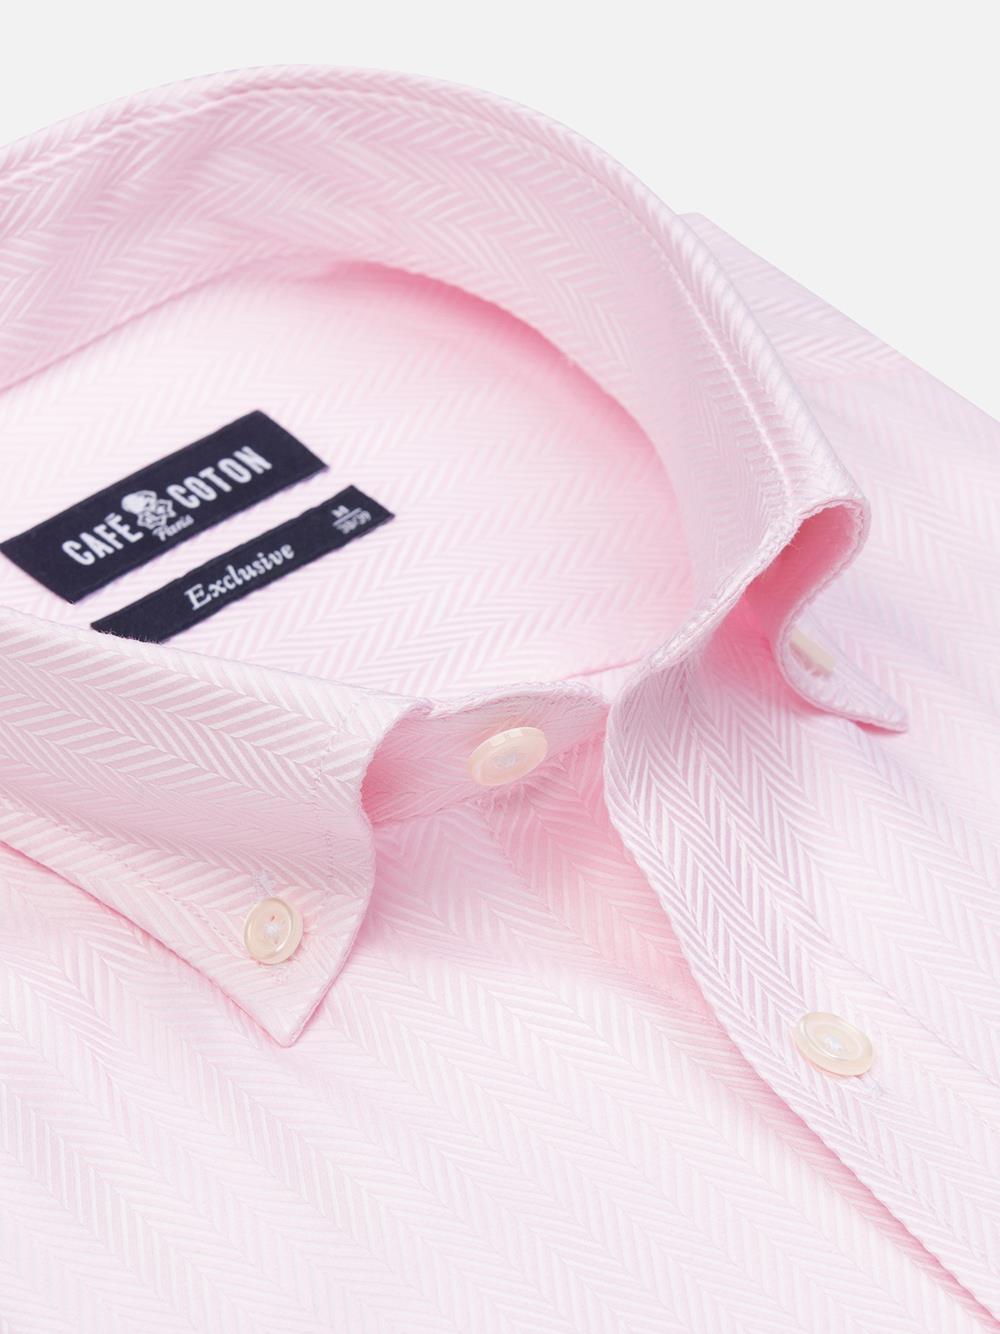 Roze overhemd visgraat  - Button-down kraag